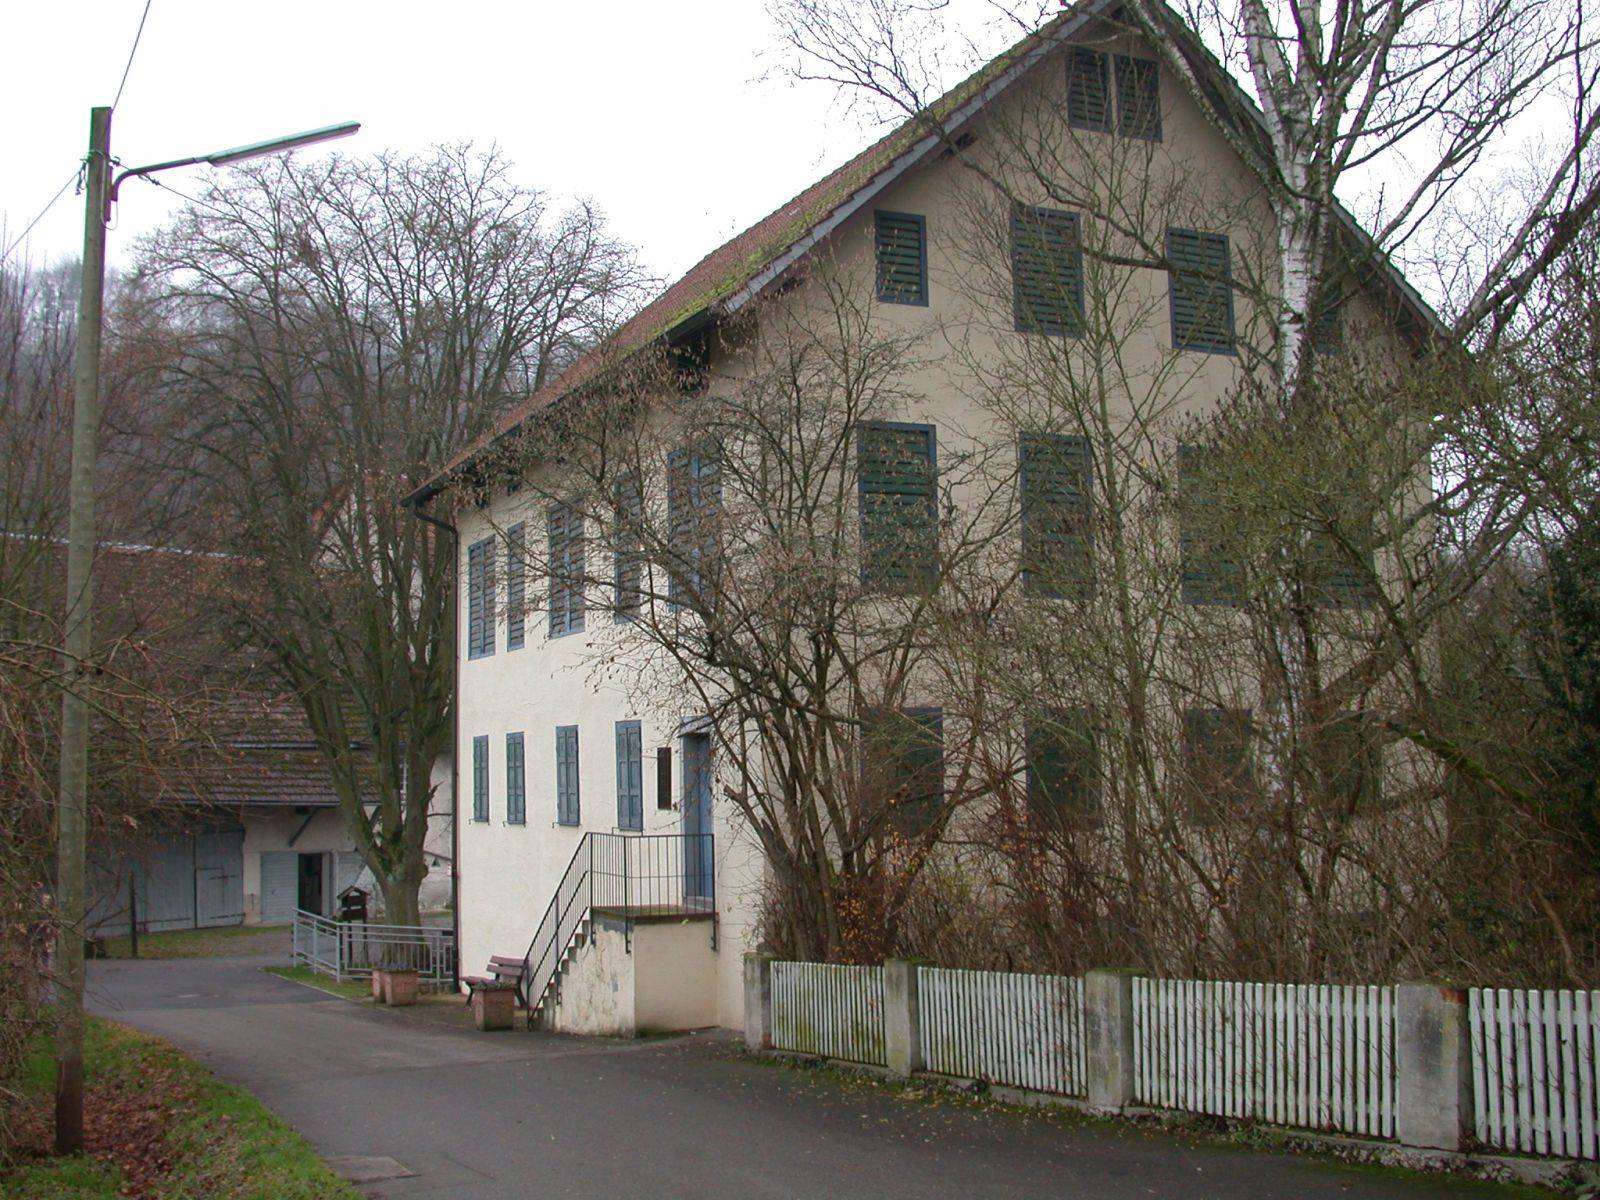  Hopfenhaus 